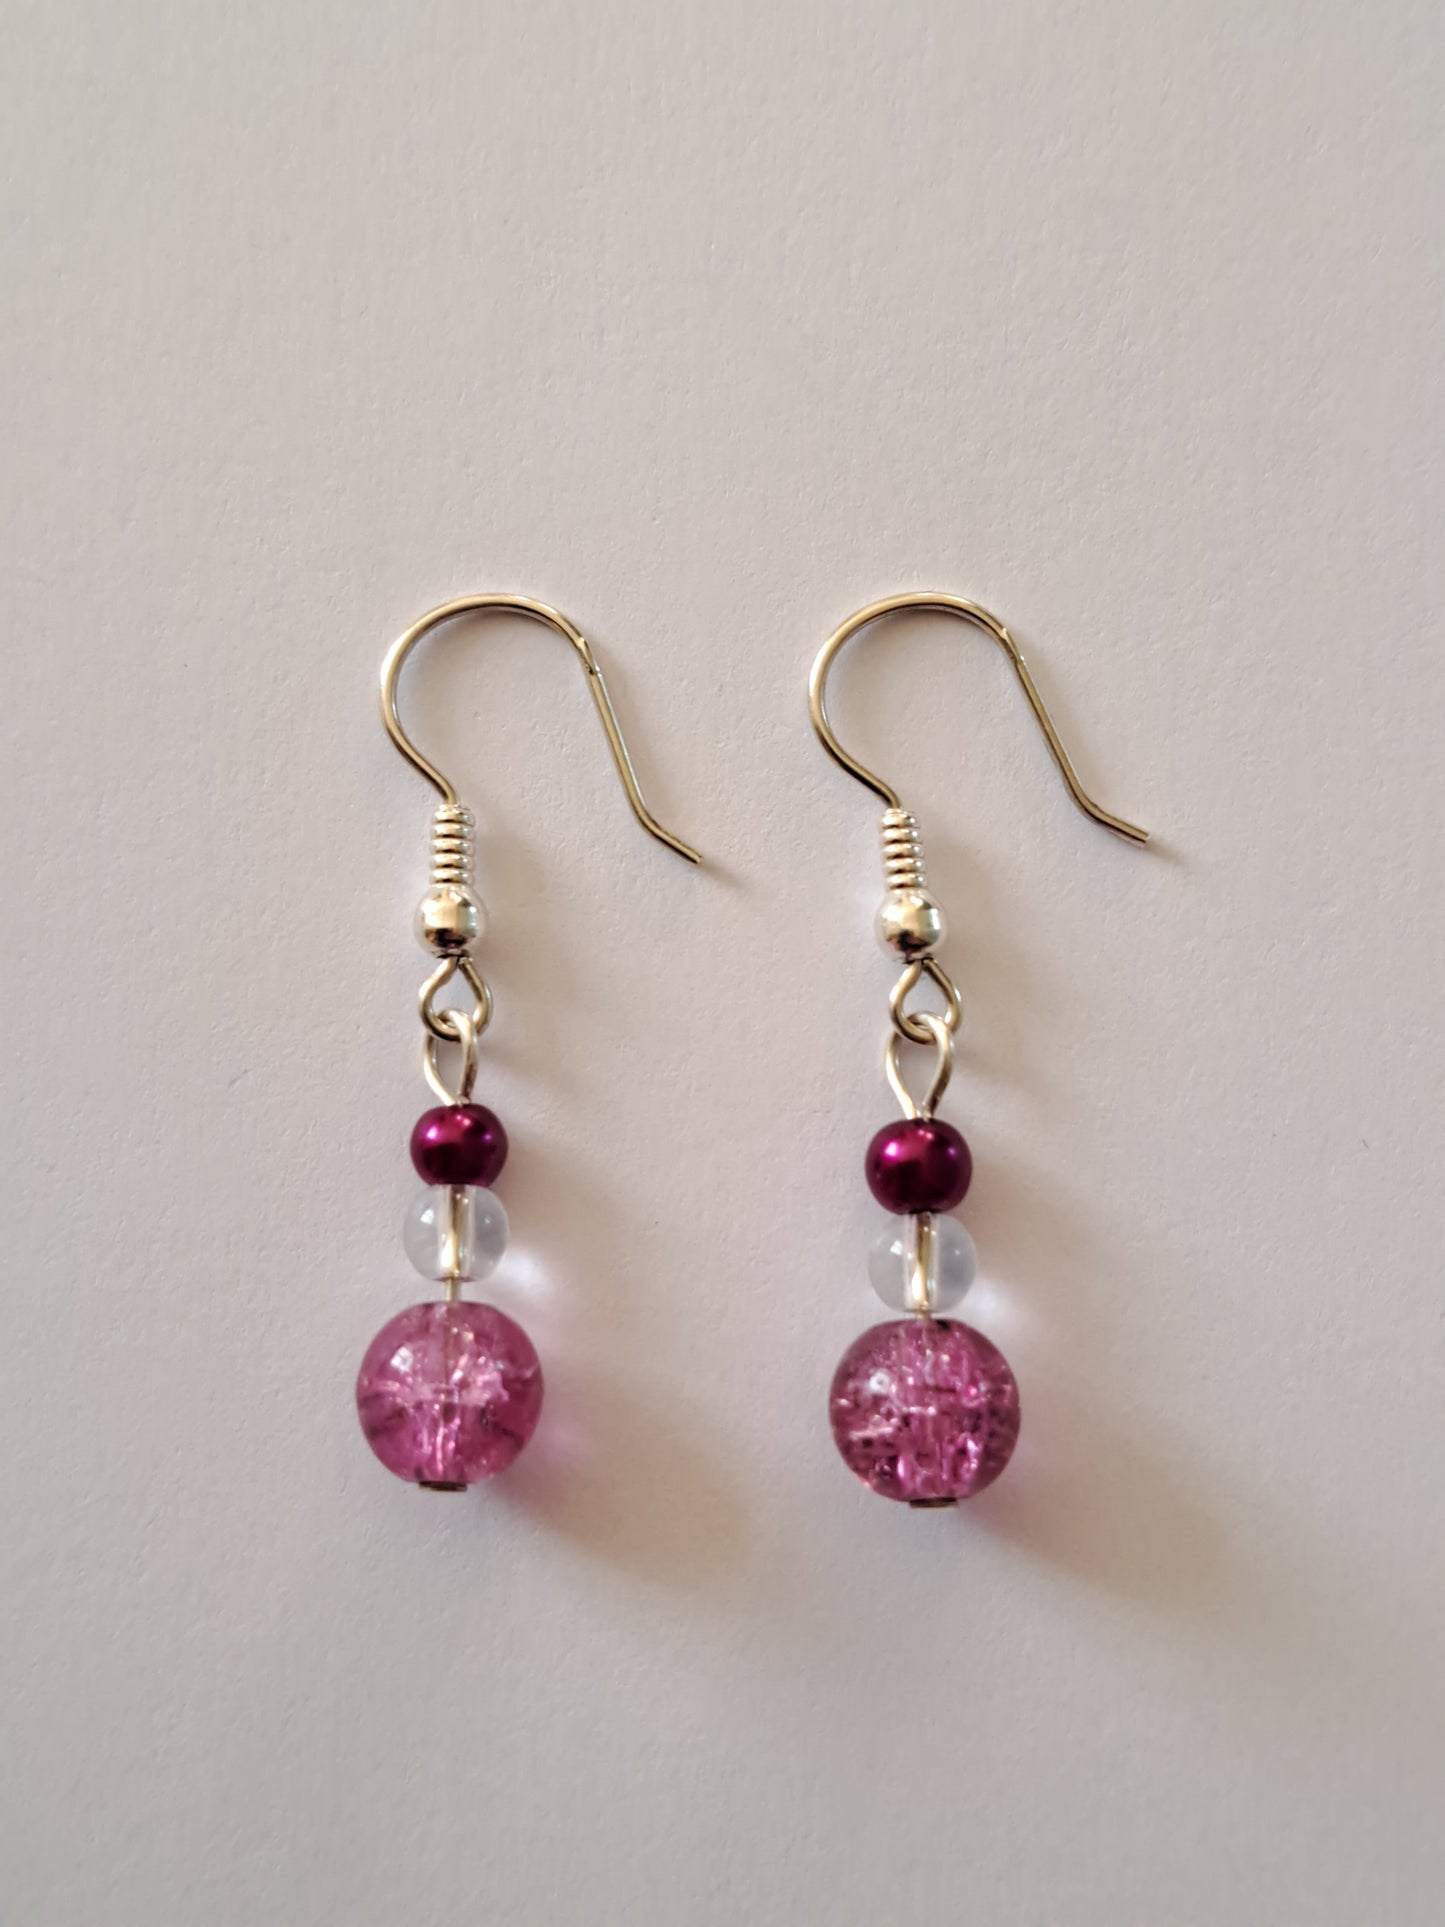 Boucles d'oreilles en argent avec perles nacrées et craquelées rose. Site de bijoux en ligne. France